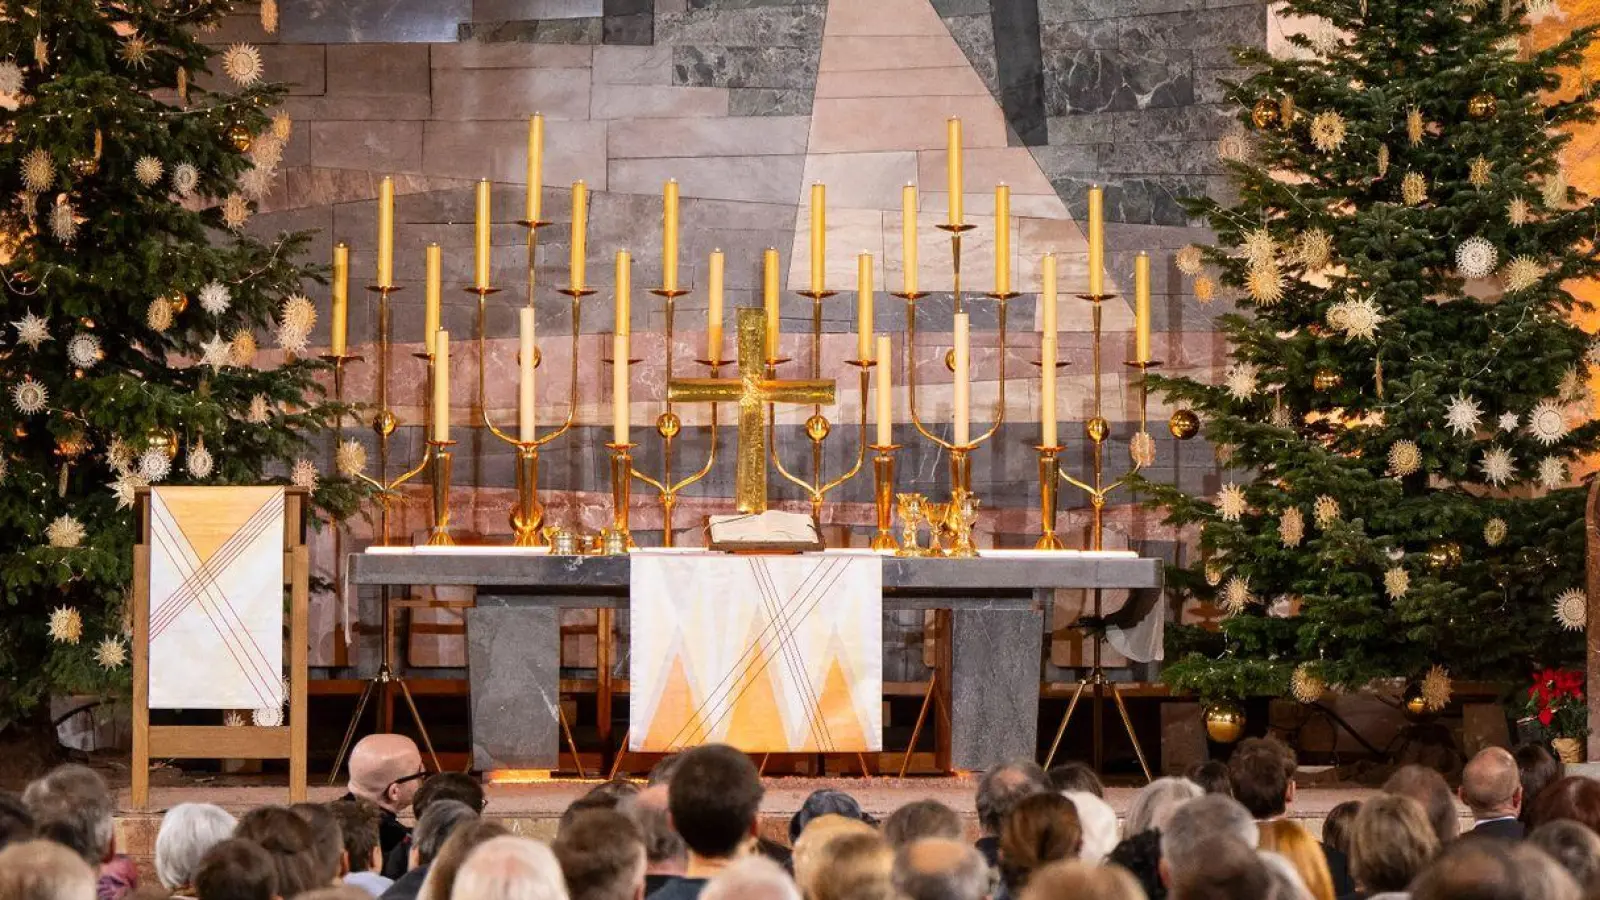 Der Landesbischof der Evangelischen Kirche Bayern, Christian Kopp, predigt während der Weihnachtsgottesdienstes in der Kirche St. Matthäus in München. (Foto: Lennart Preiss/dpa)